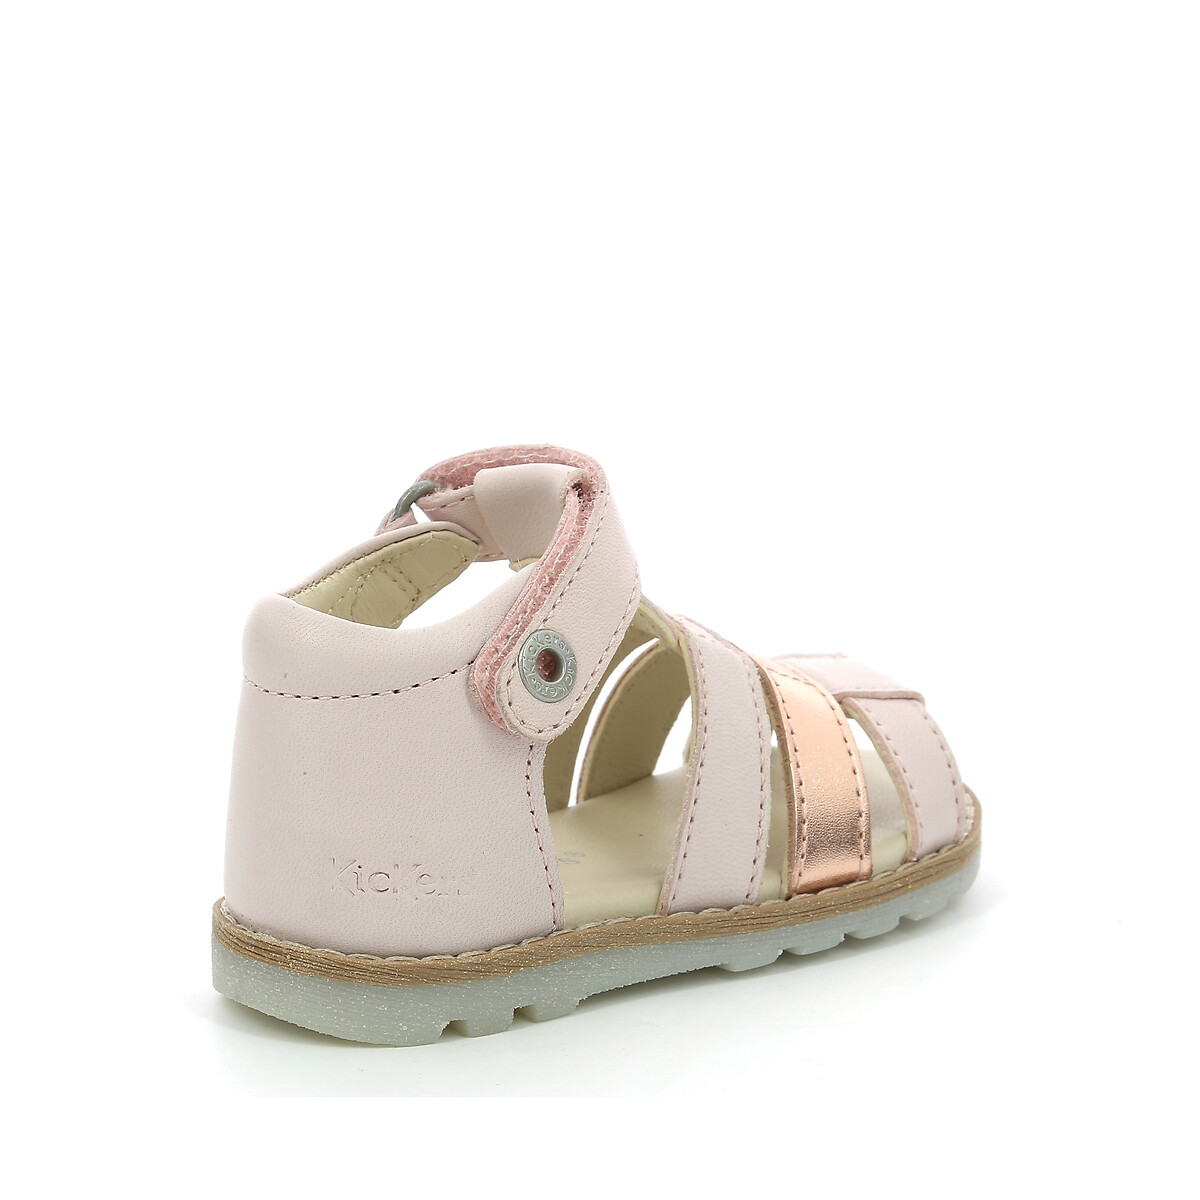 Nouveau Bébé Fille En Cuir Doublé Rose Blanc Sandales Bout Ouvert Été Chaussures Taille UK 7 